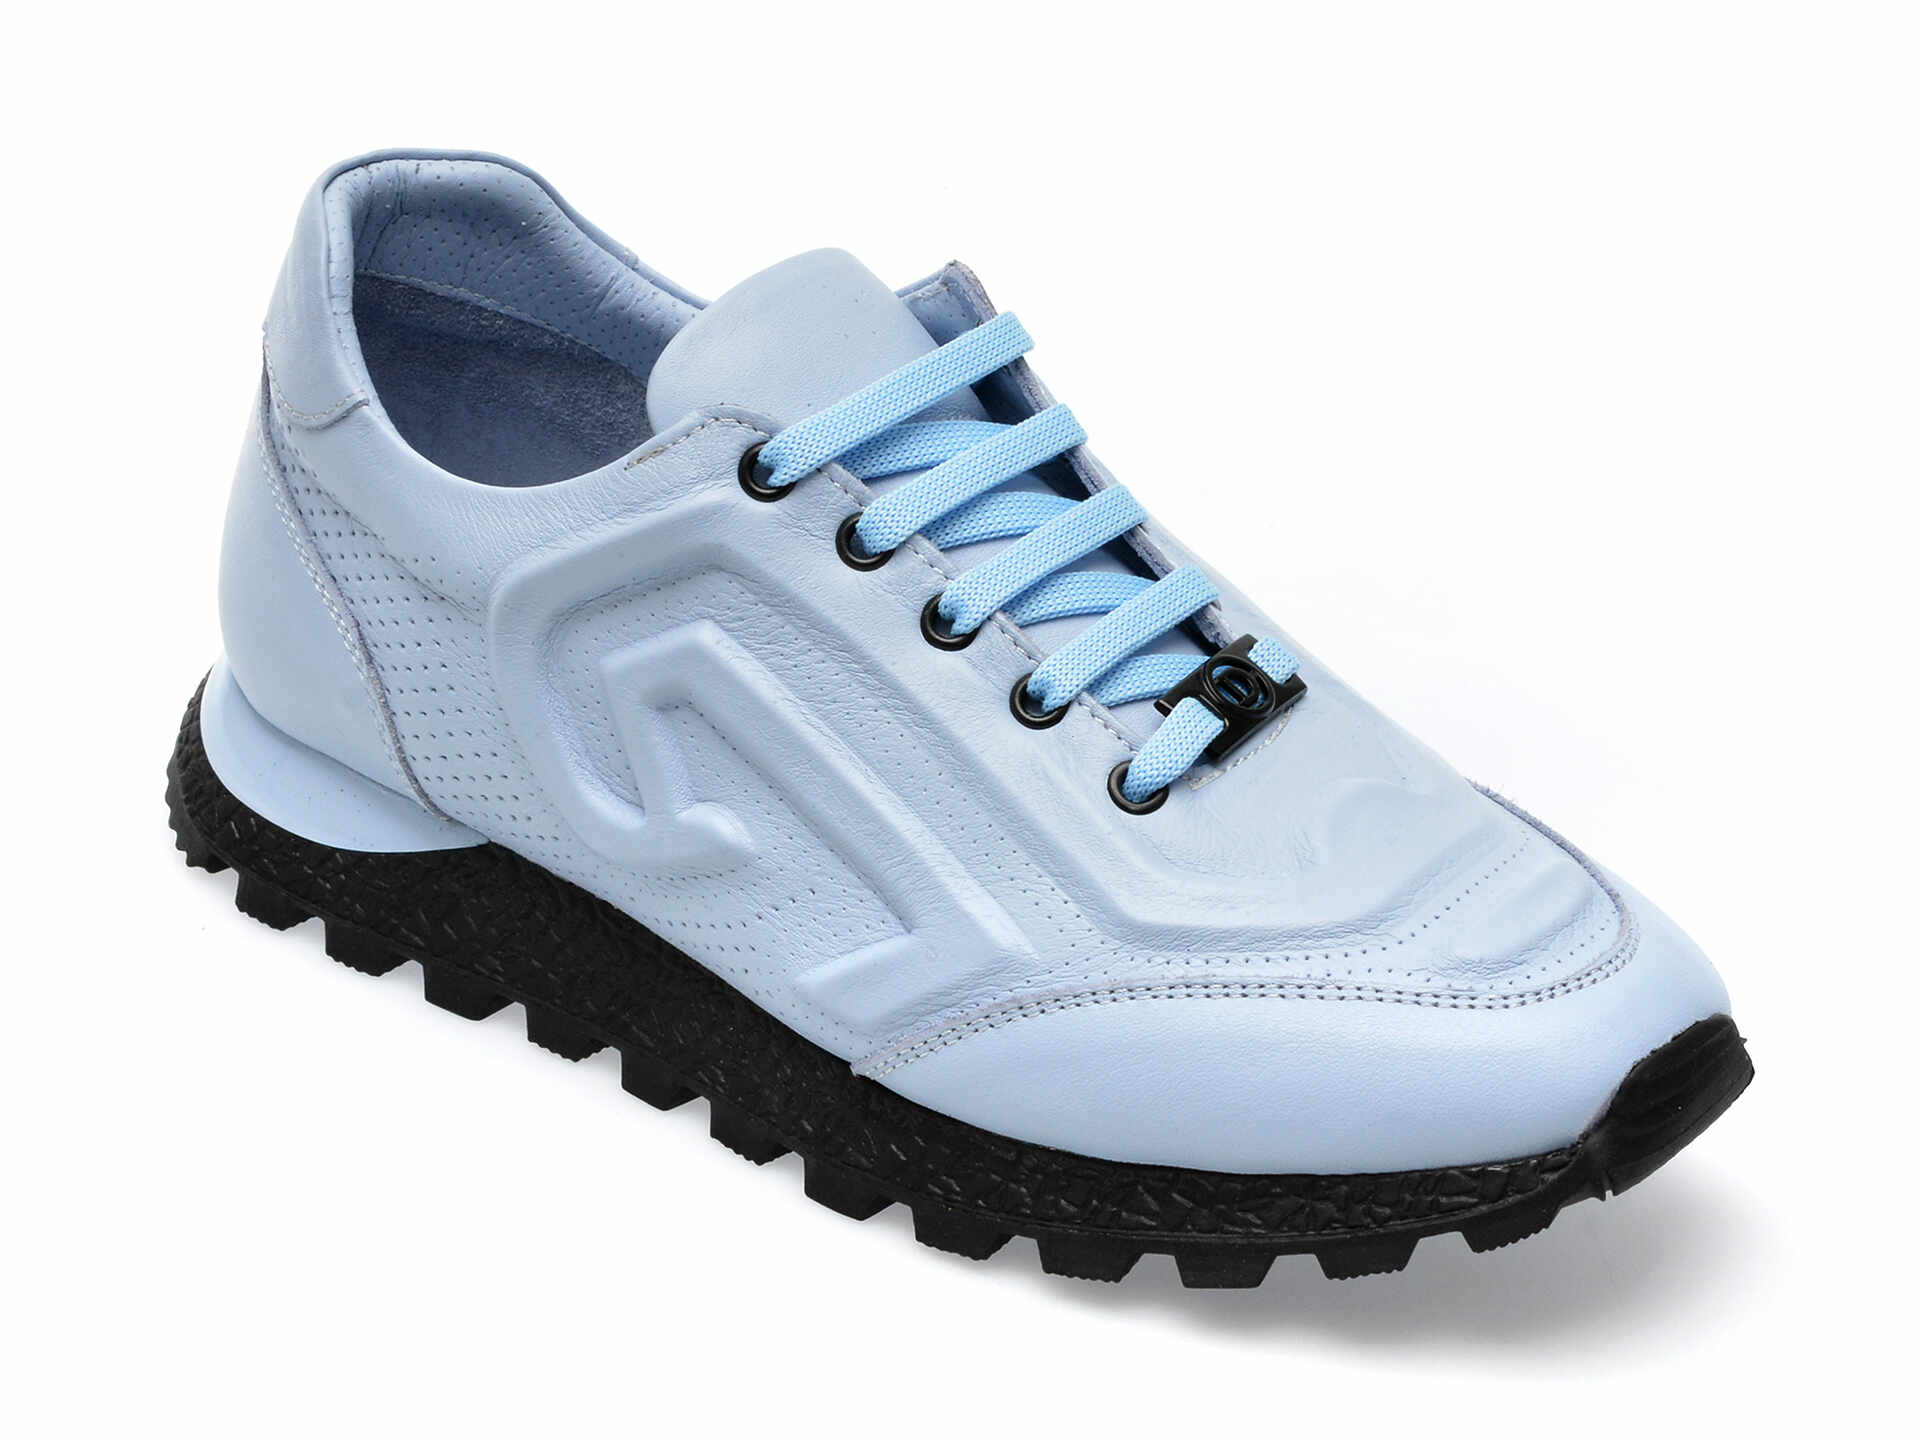 Pantofi GRYXX albastri, 82773, din piele naturala